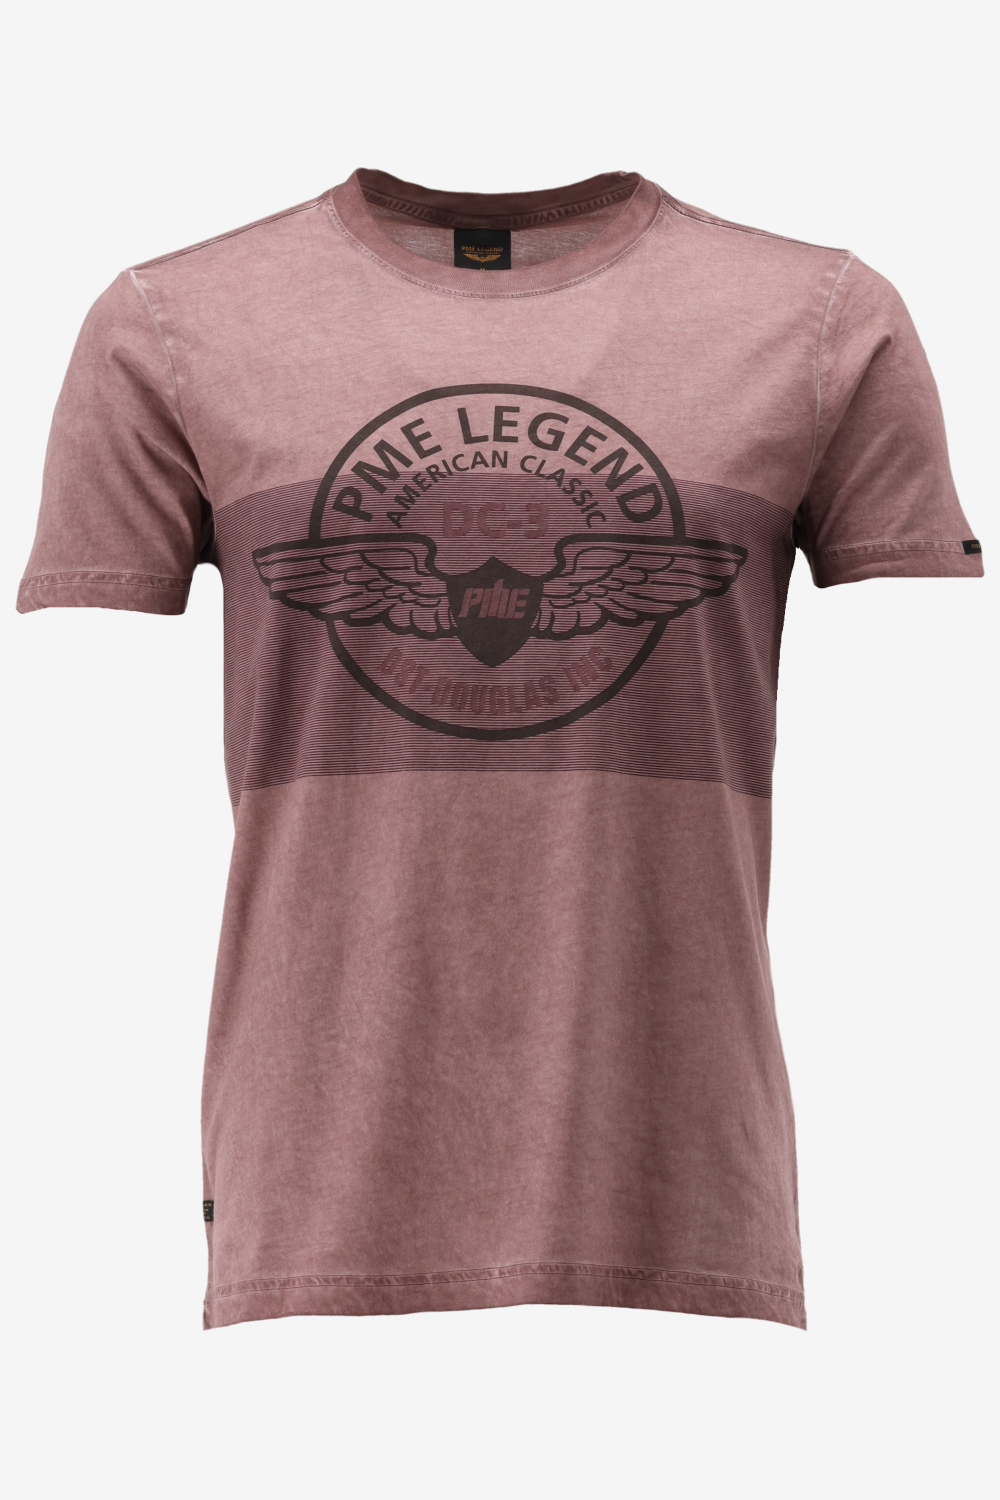 Pme Legend T-shirt 